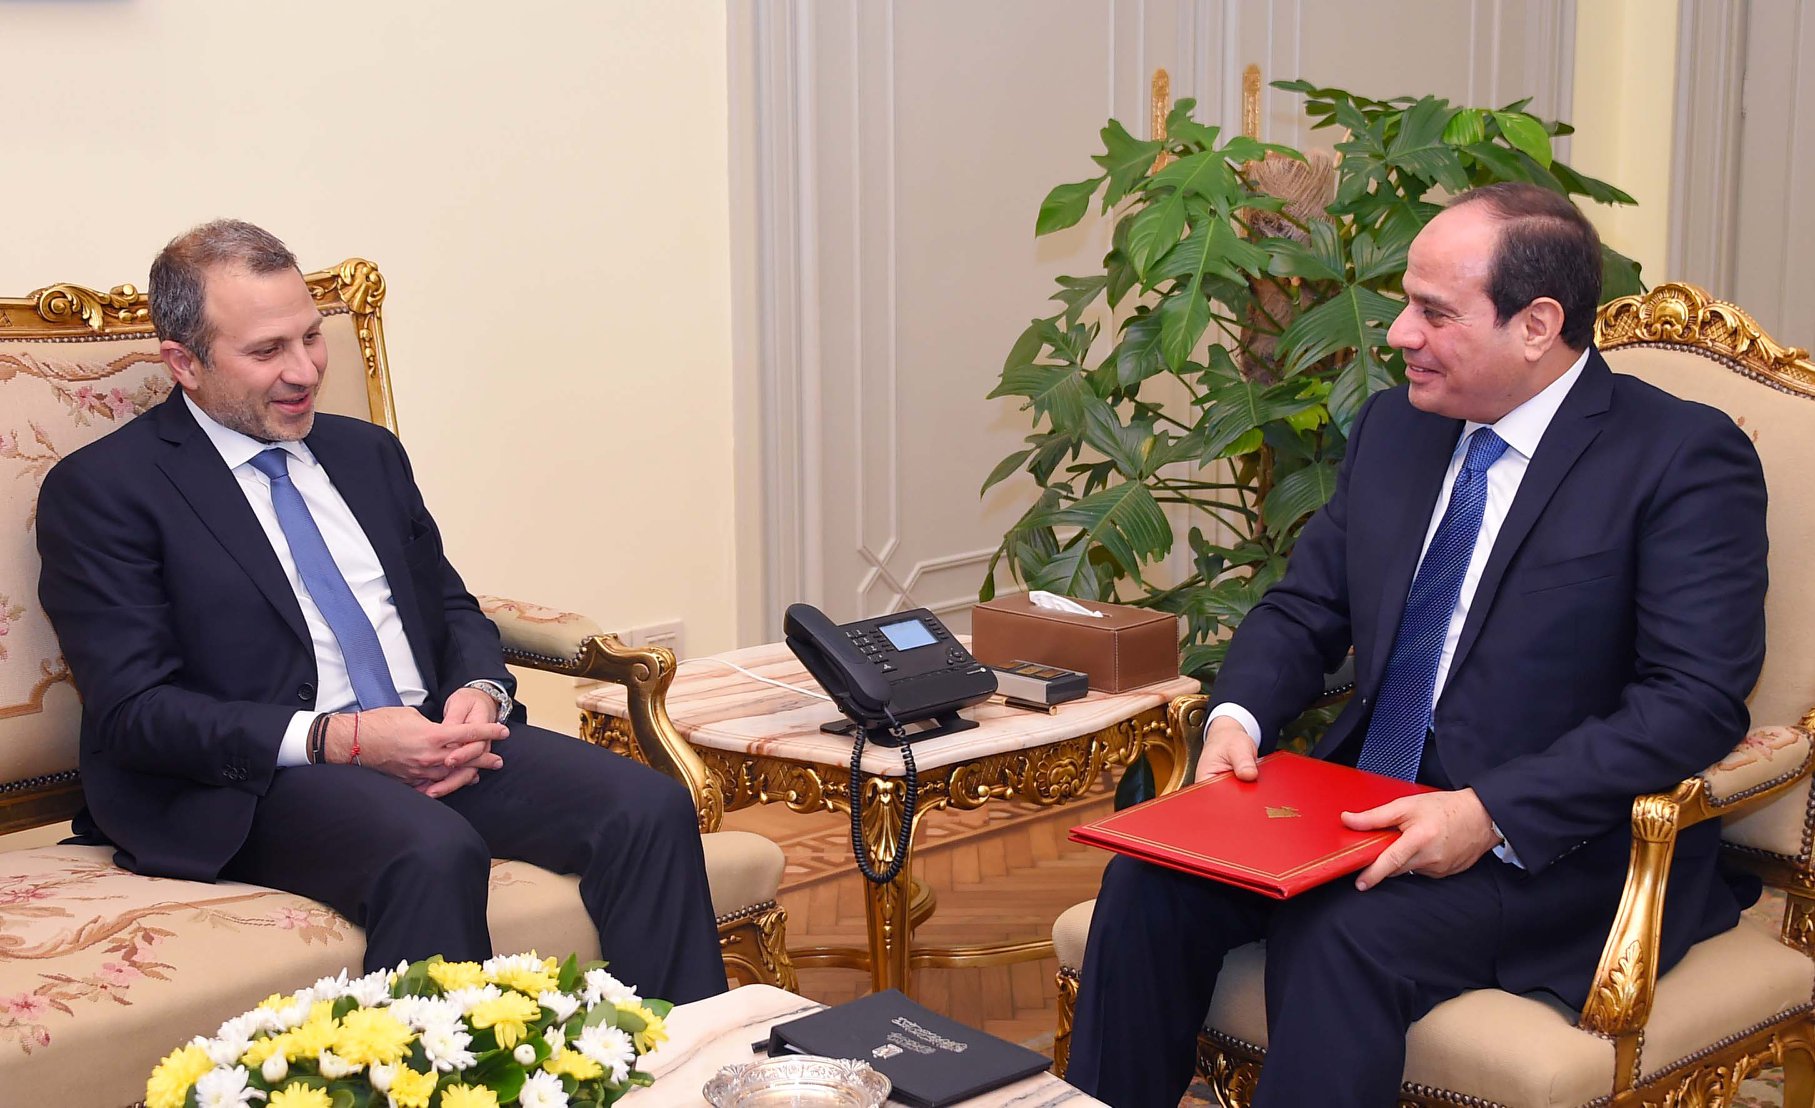 الرئيس المصري يتسلم دعوة من نظيره اللبناني لحضور قمة بيروت الاقتصادية